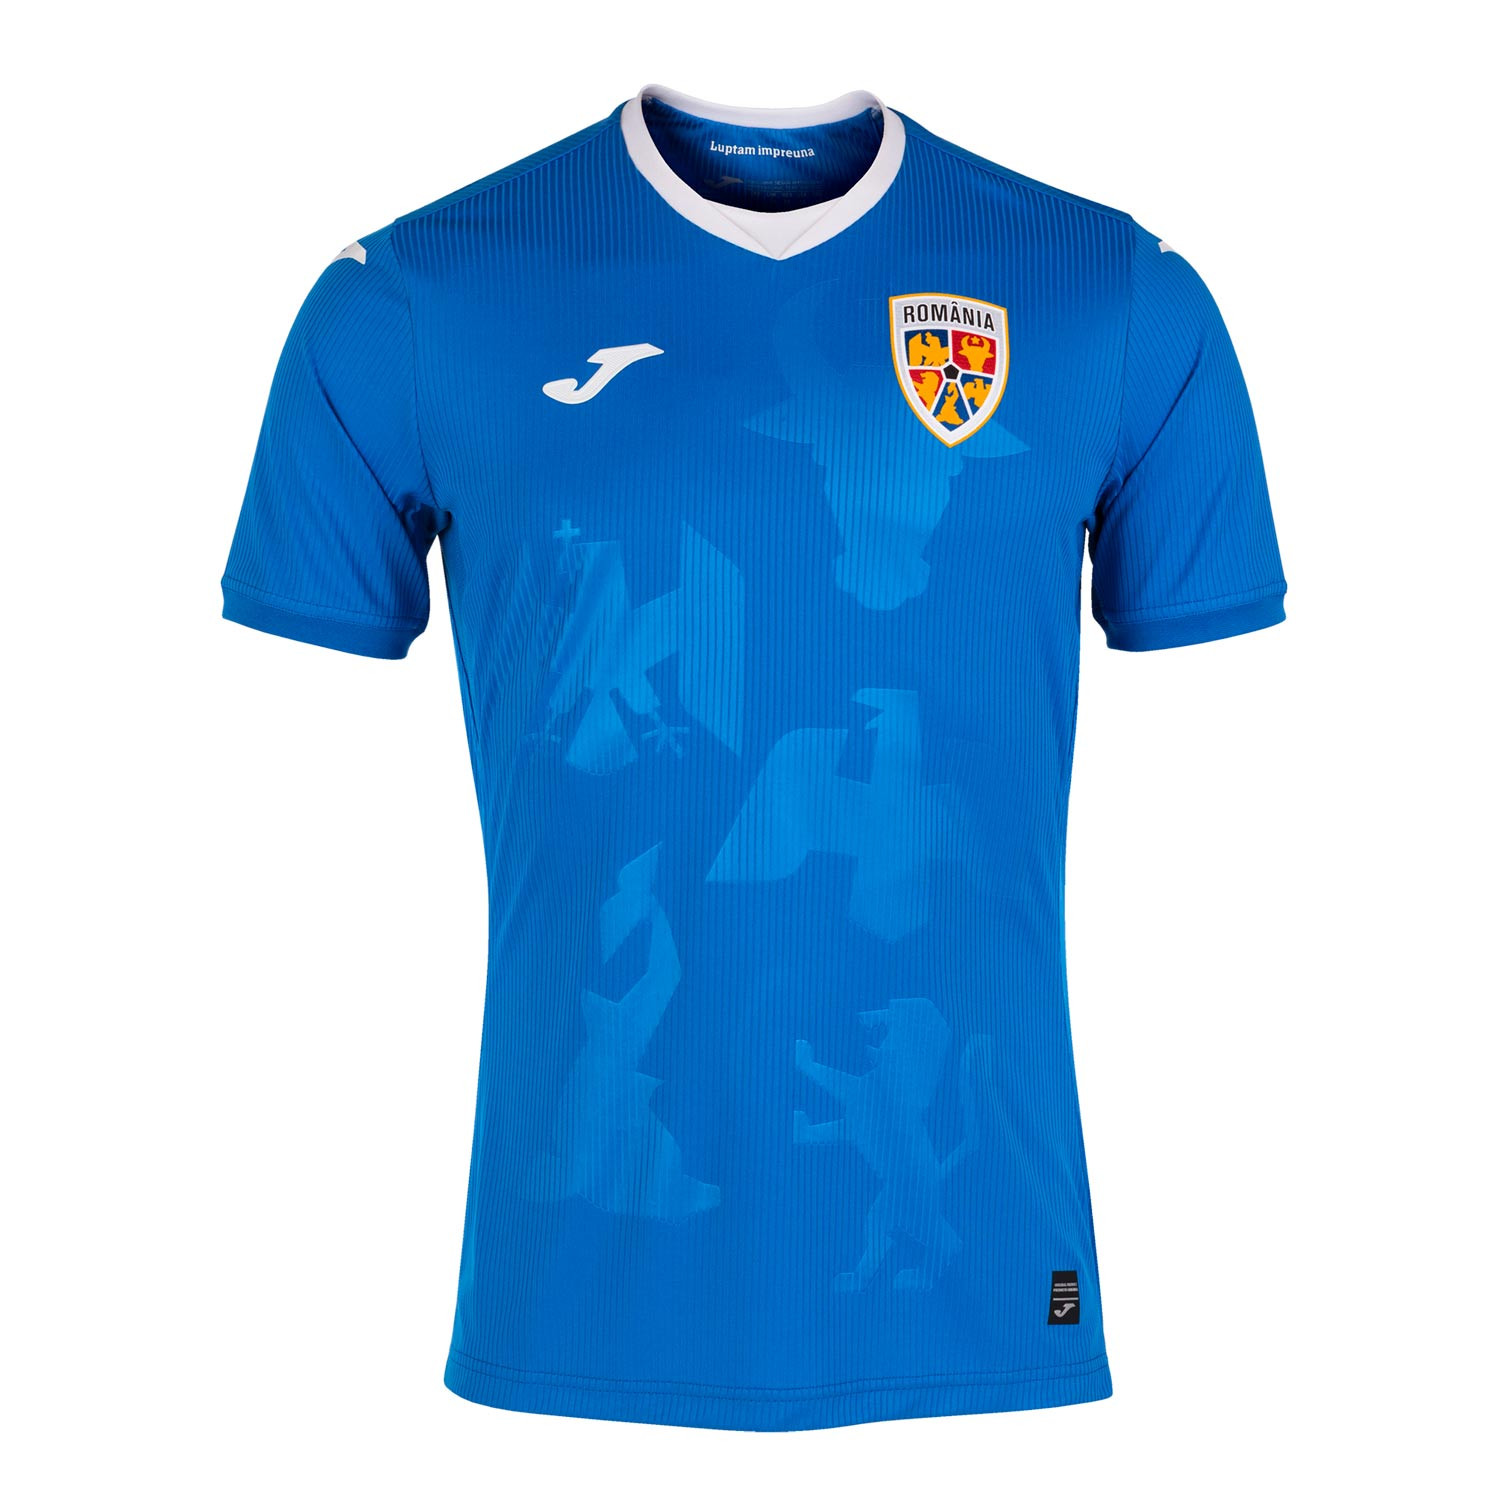 Camiseta Joma 2a Rumania 2021 2022 azul